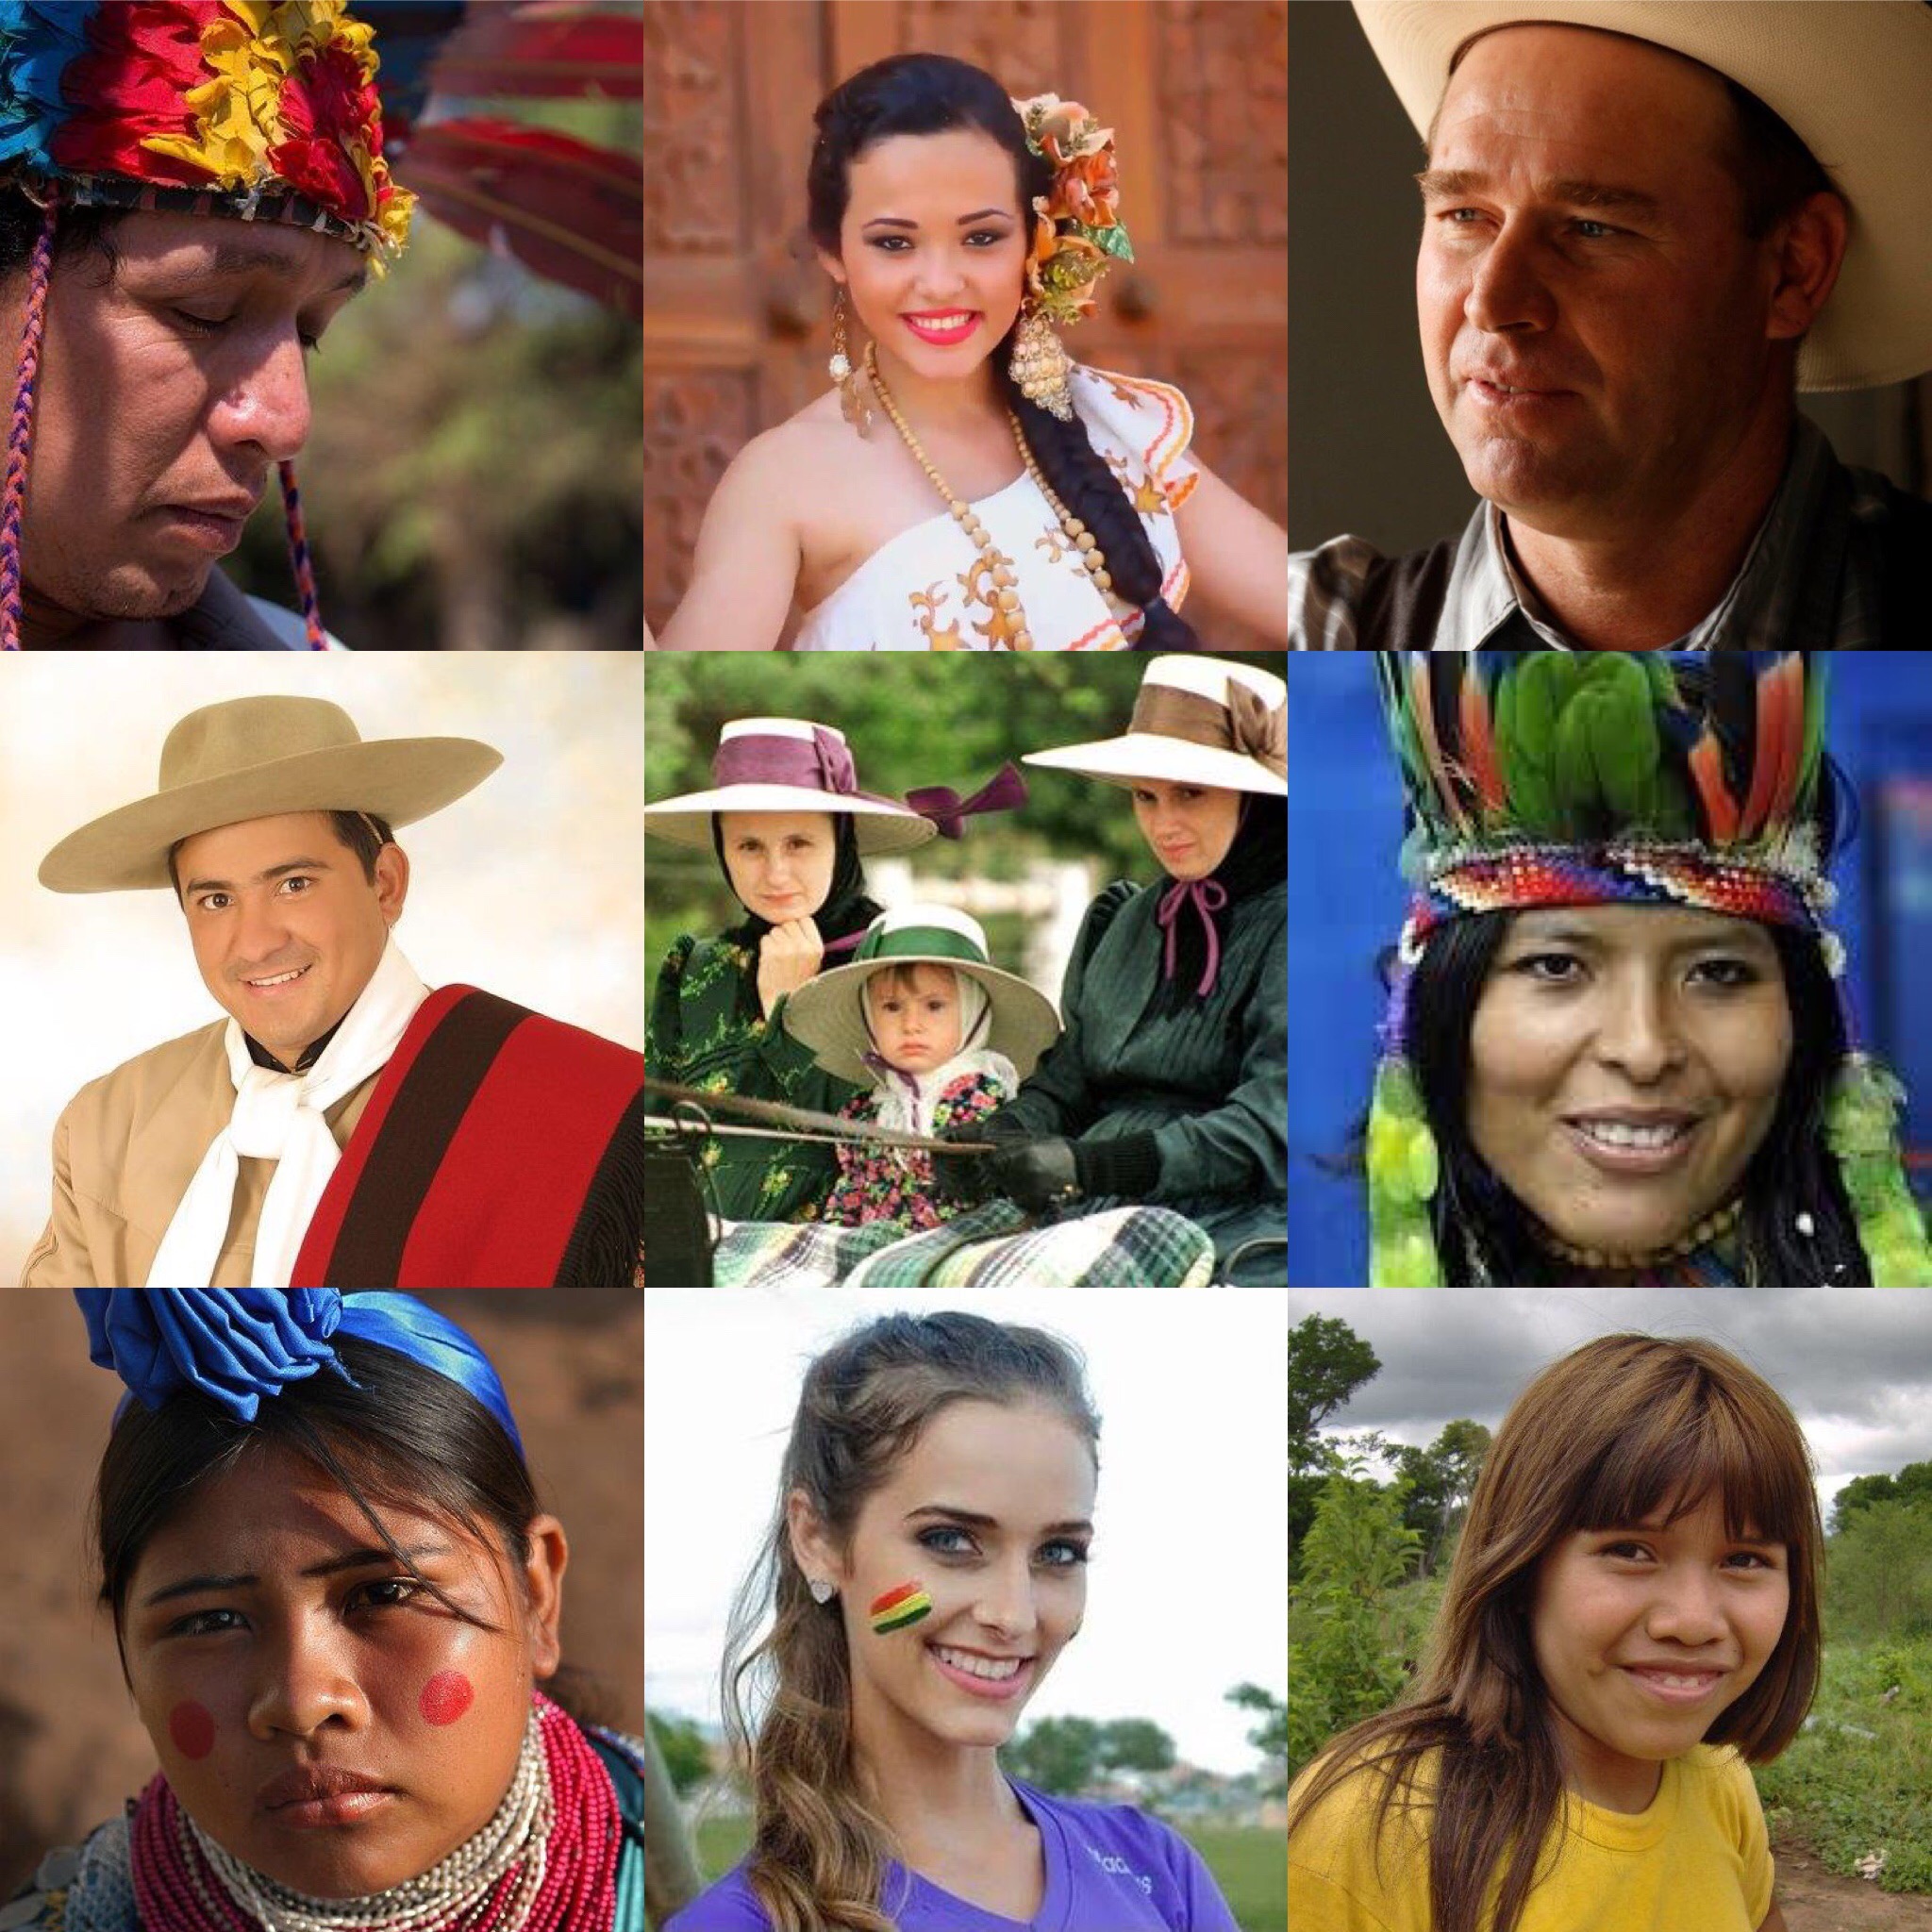 Mari Kita Mengenal Kelompok Etnis Bolivia